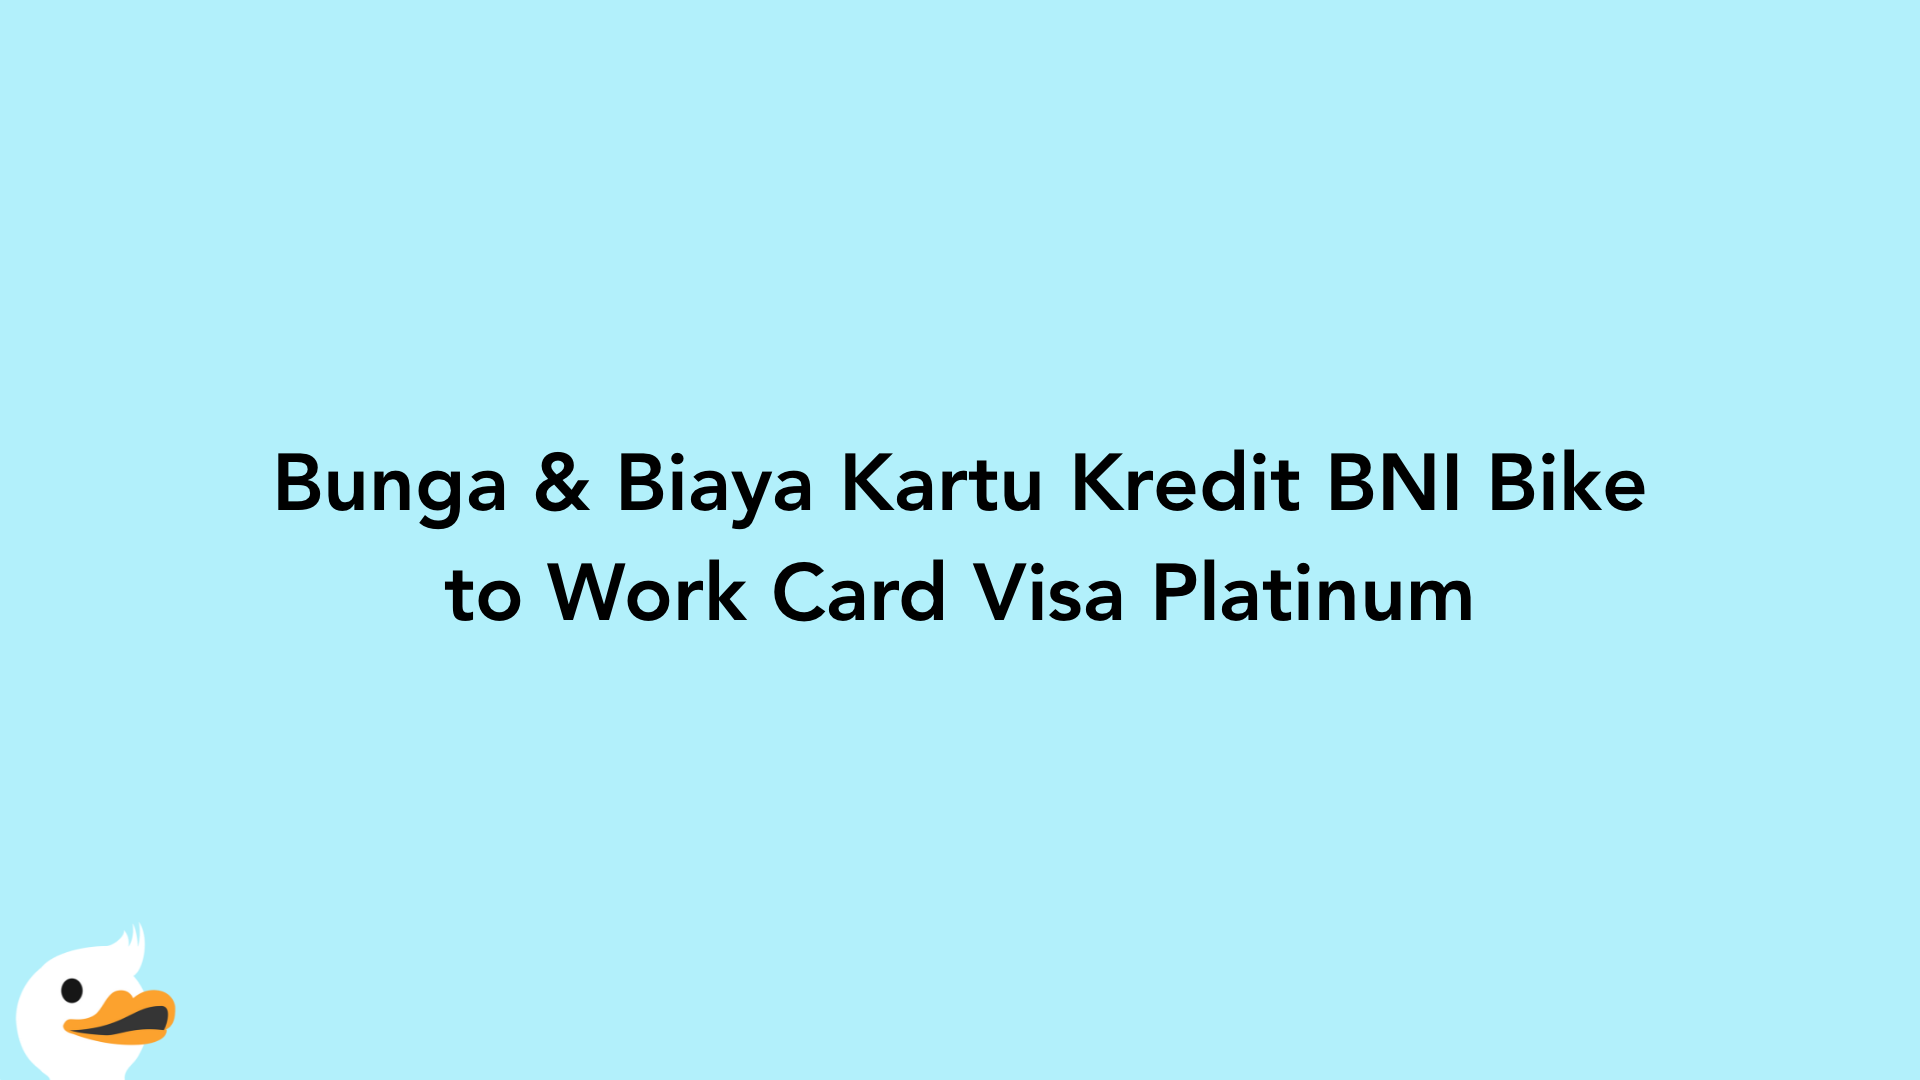 Bunga & Biaya Kartu Kredit BNI Bike to Work Card Visa Platinum